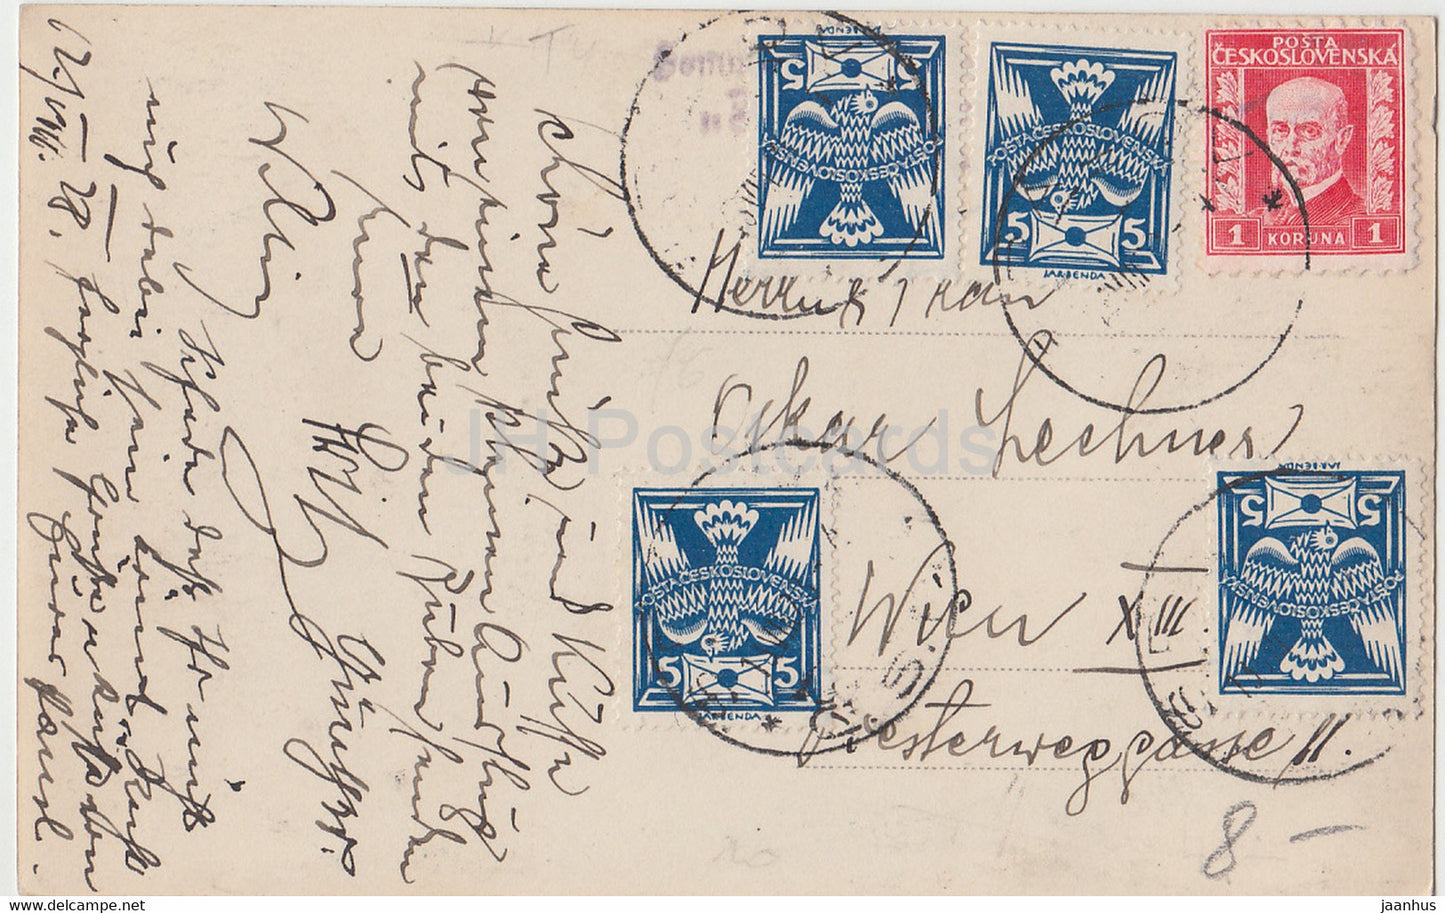 Maria Stein - Elka 58 - carte postale ancienne - 1928 - Tchécoslovaquie - République tchèque - utilisé